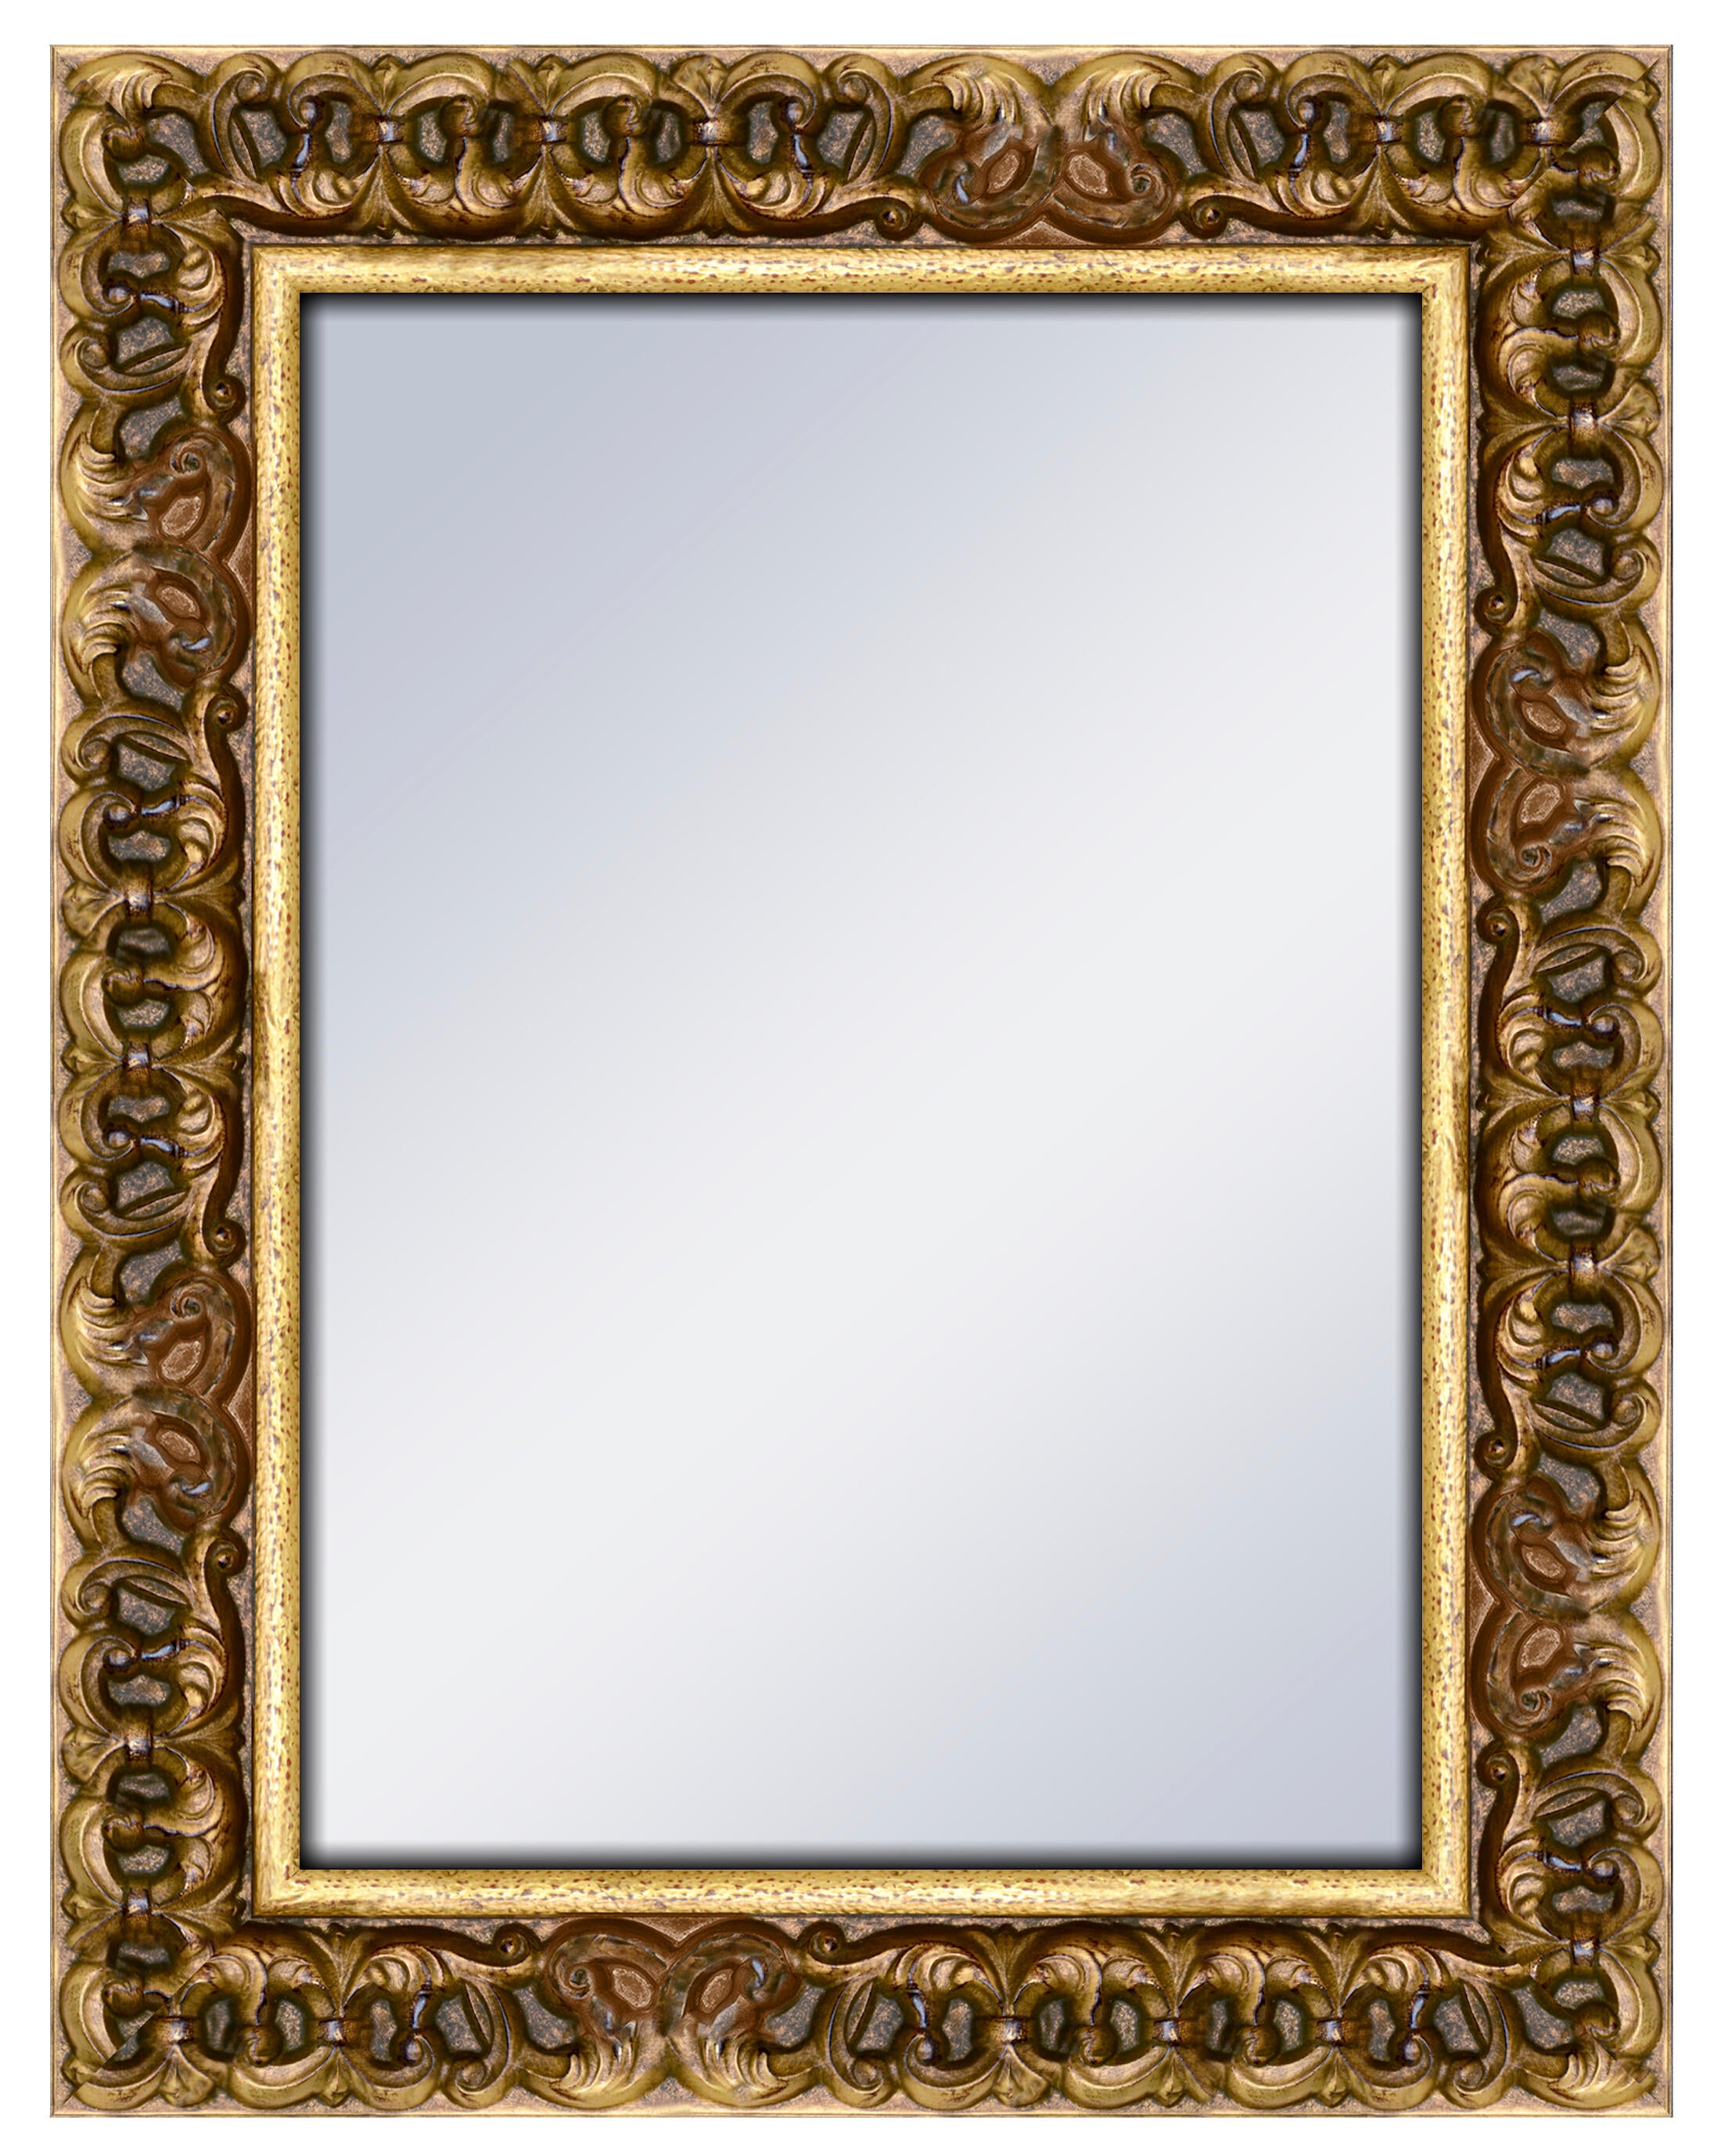 Espejo enmarcado rectangular queen viejo oro 72 x 92 cm